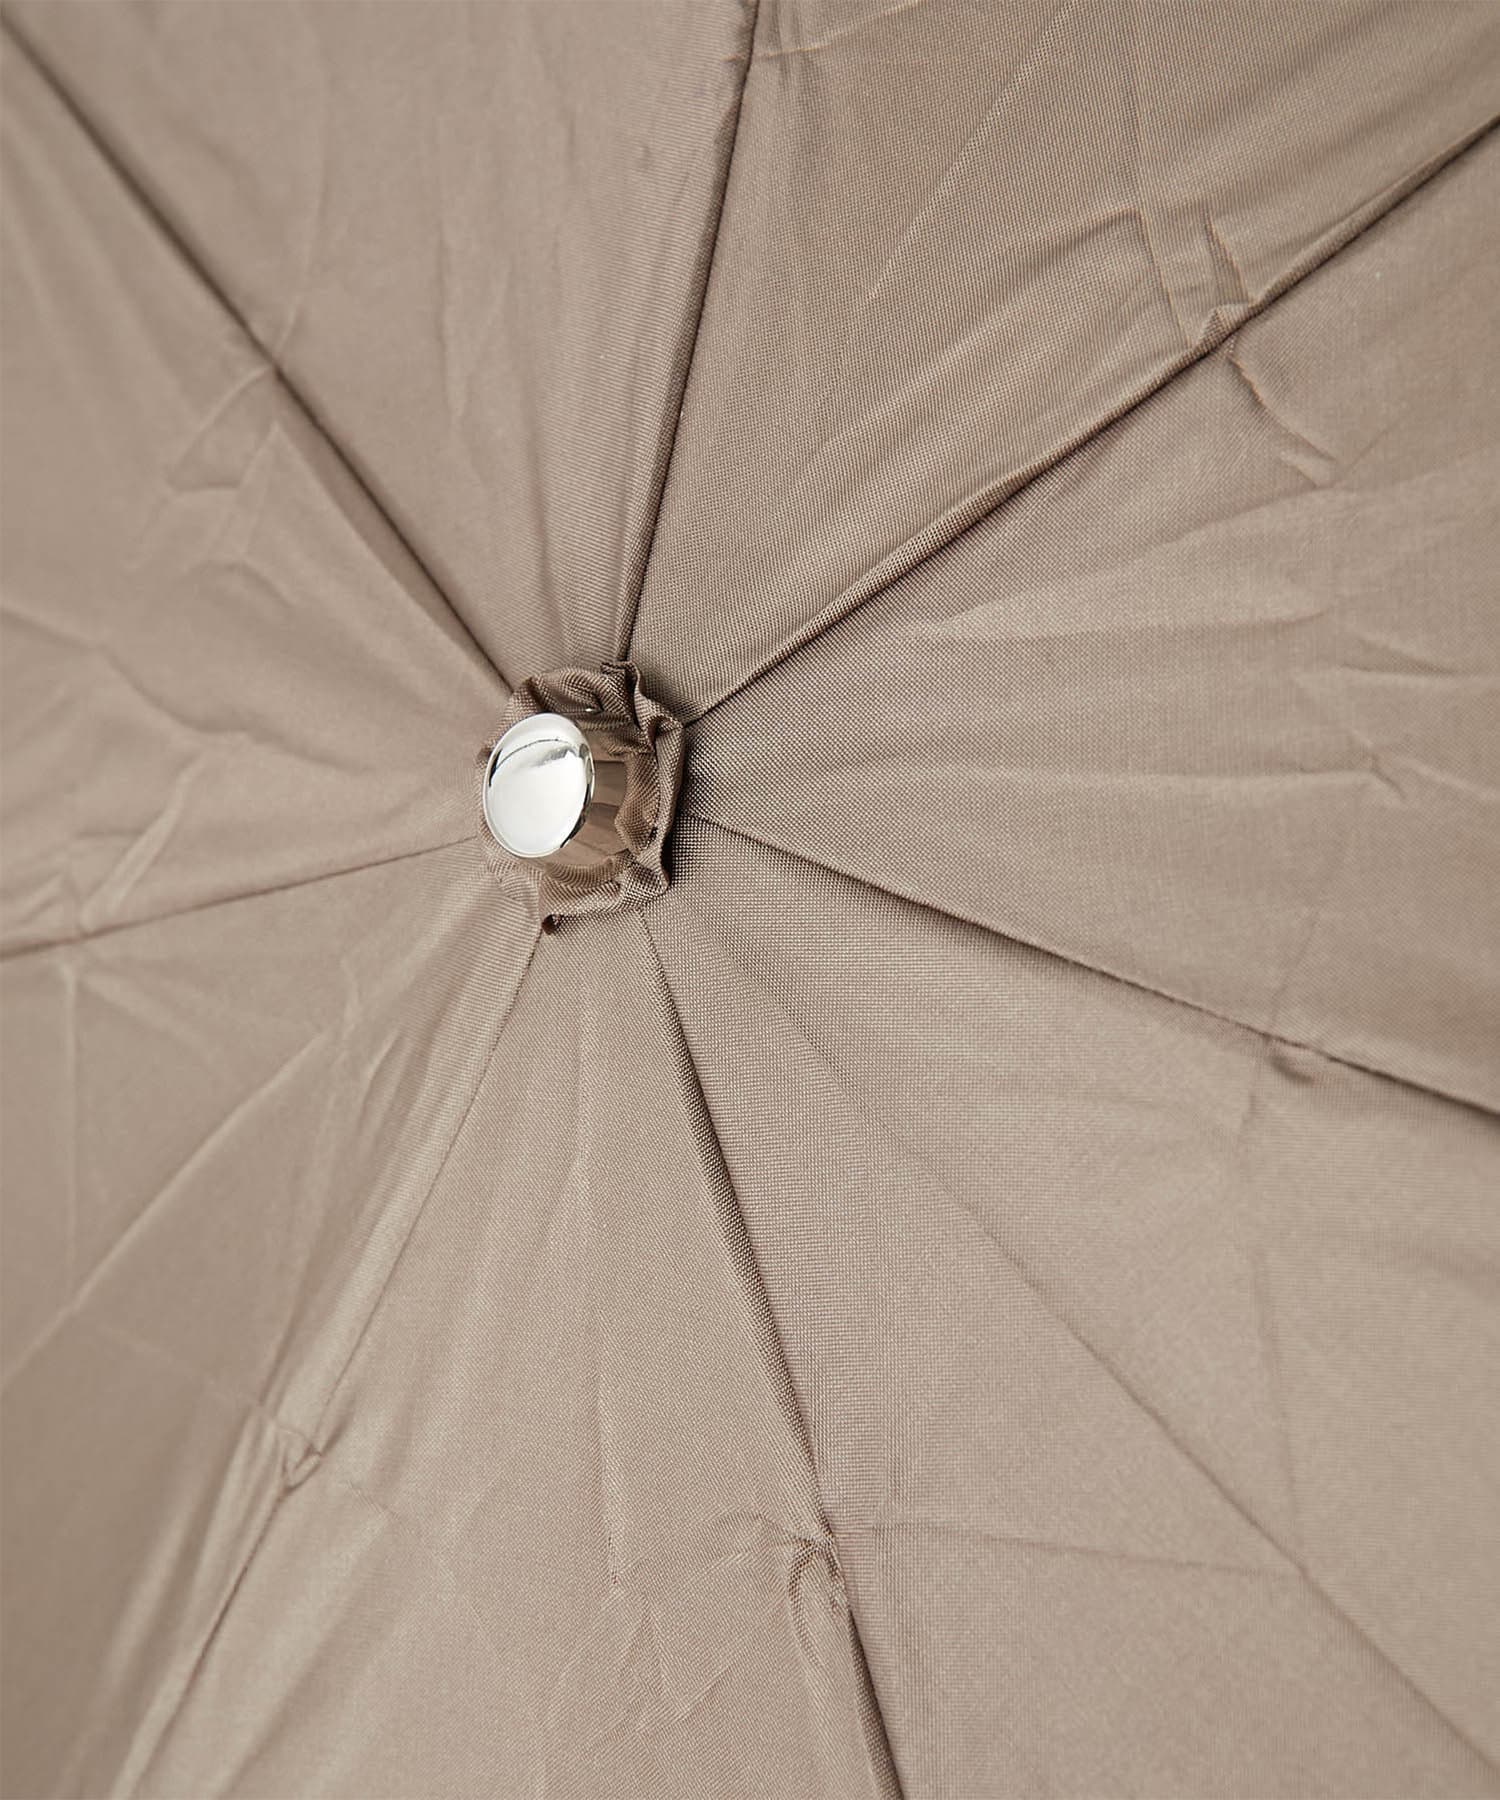 GALLARDAGALANTE(ガリャルダガランテ) 《晴雨兼用》カバー付き折りたたみ傘【オンラインストア限定商品】